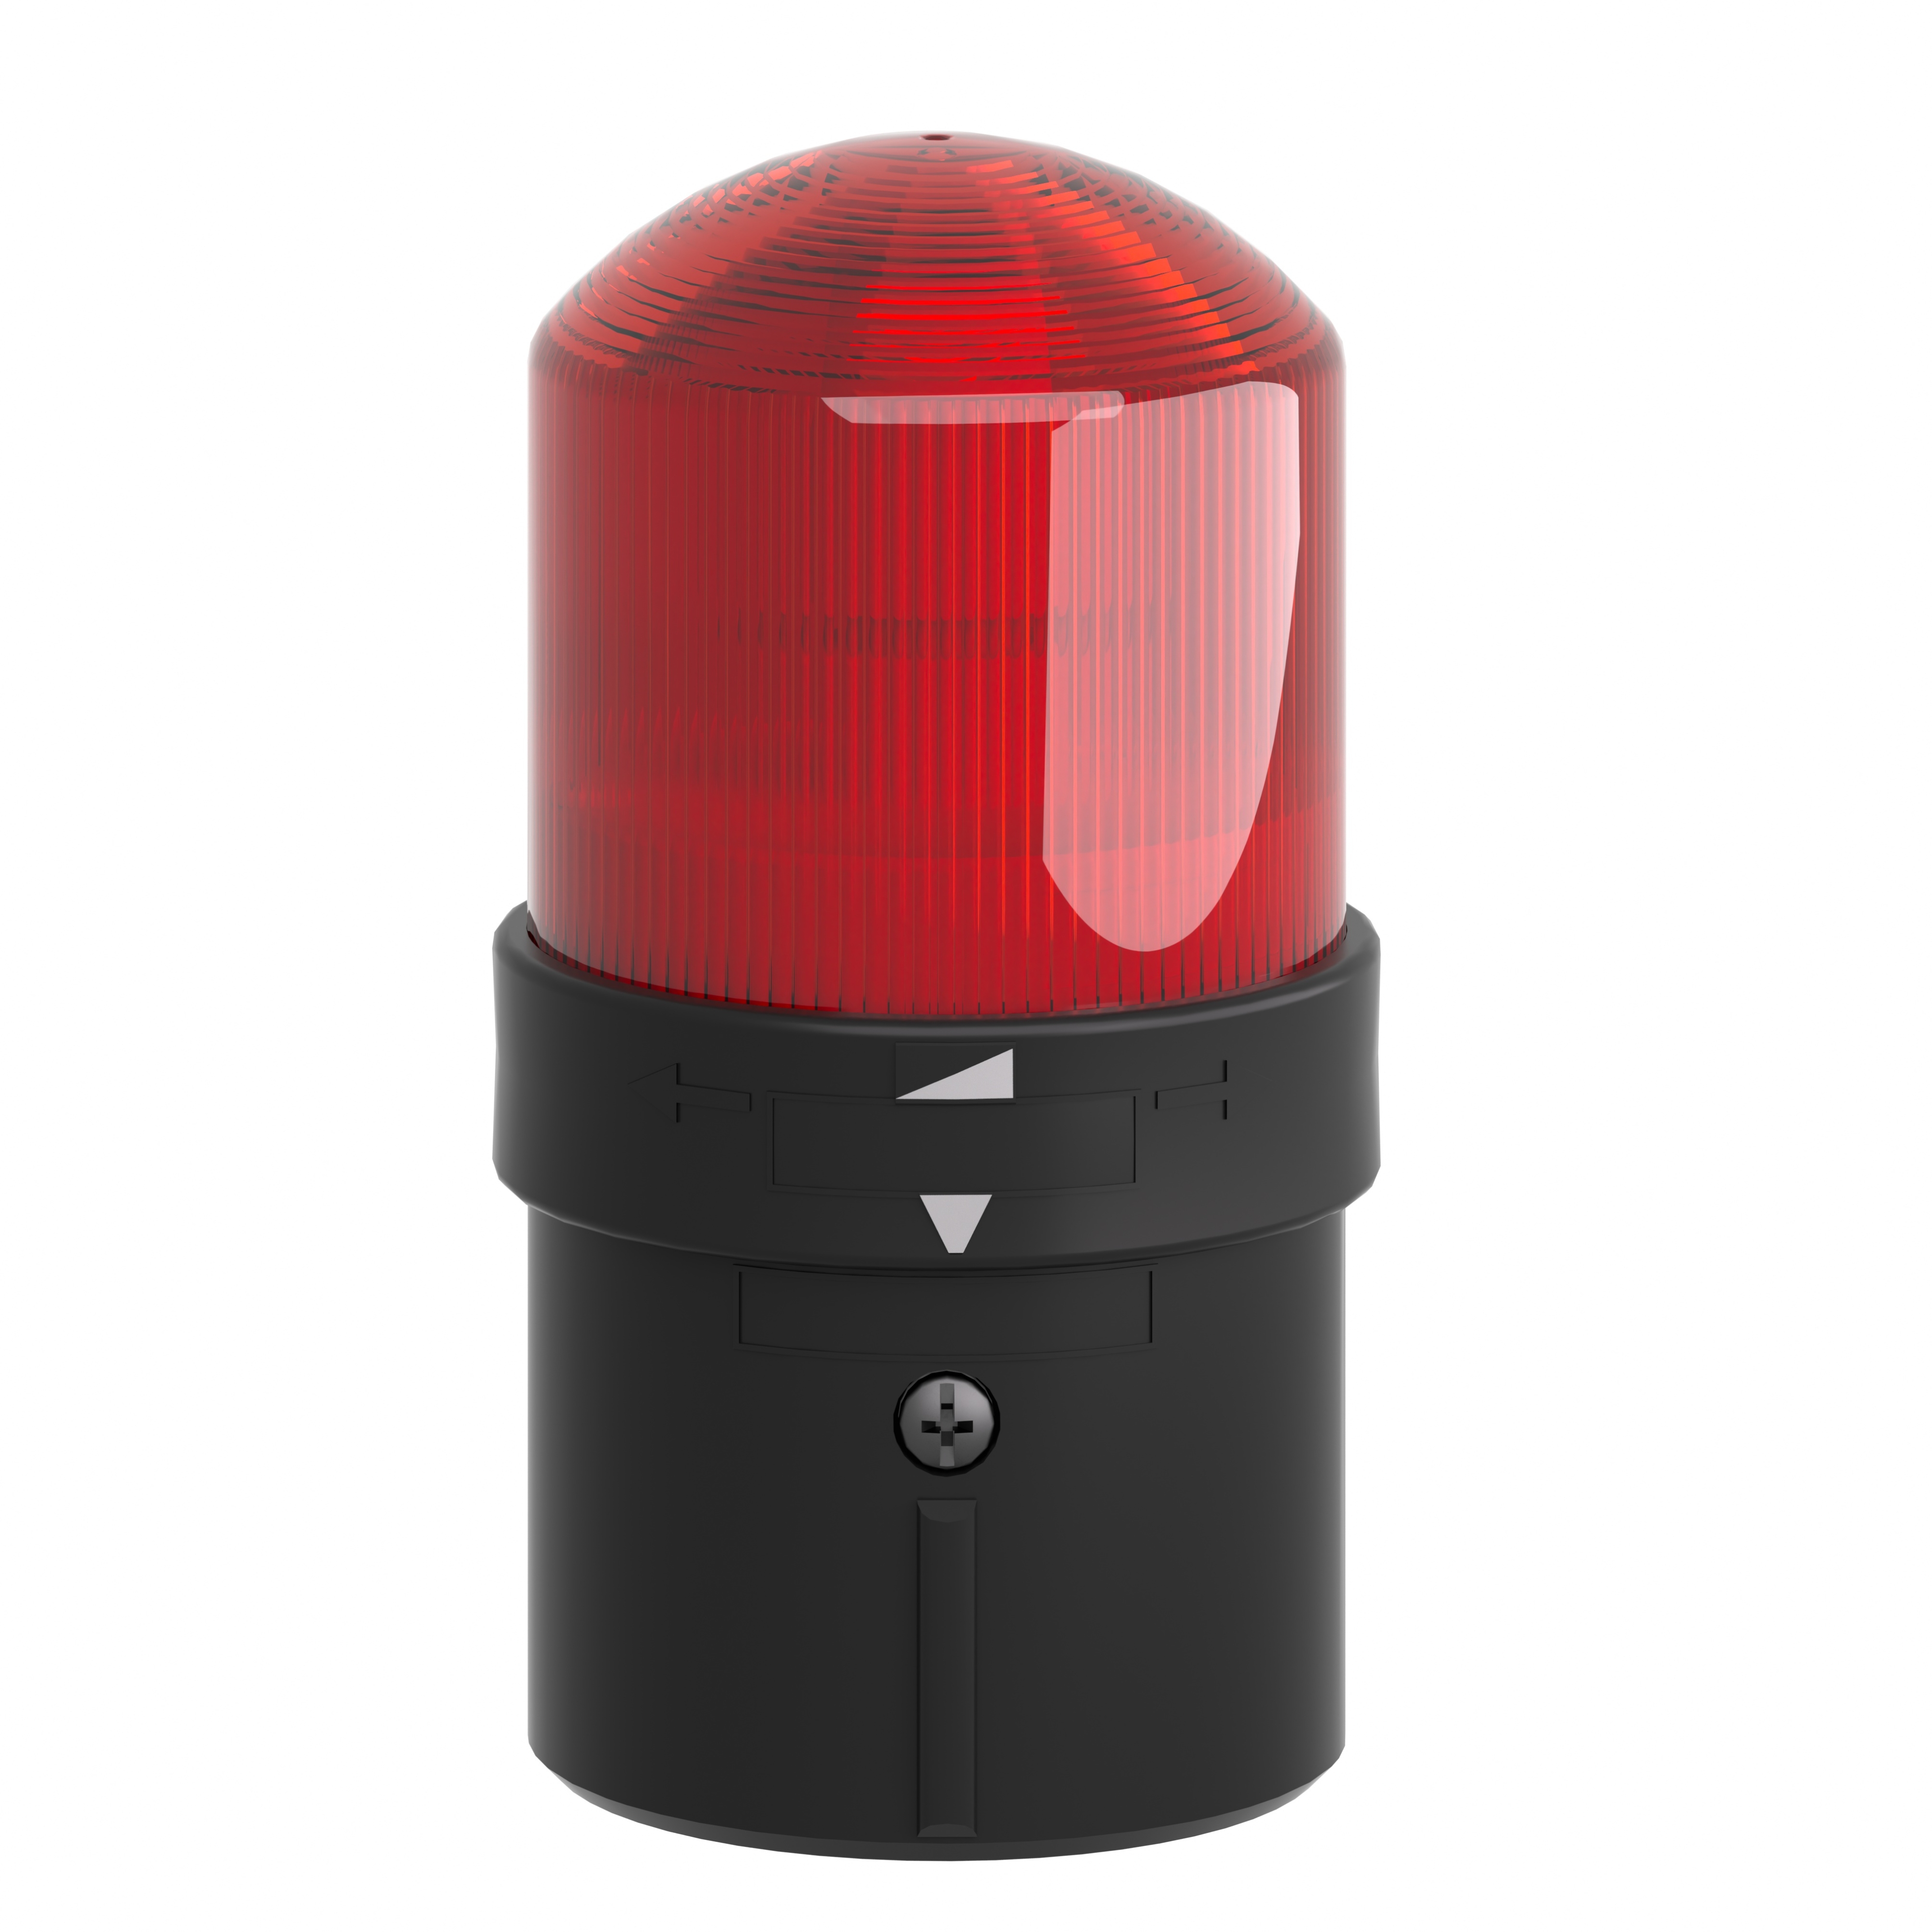 Telemecanique schneider électrique signal Lampe Harmony xvb c34 couleur rouge 